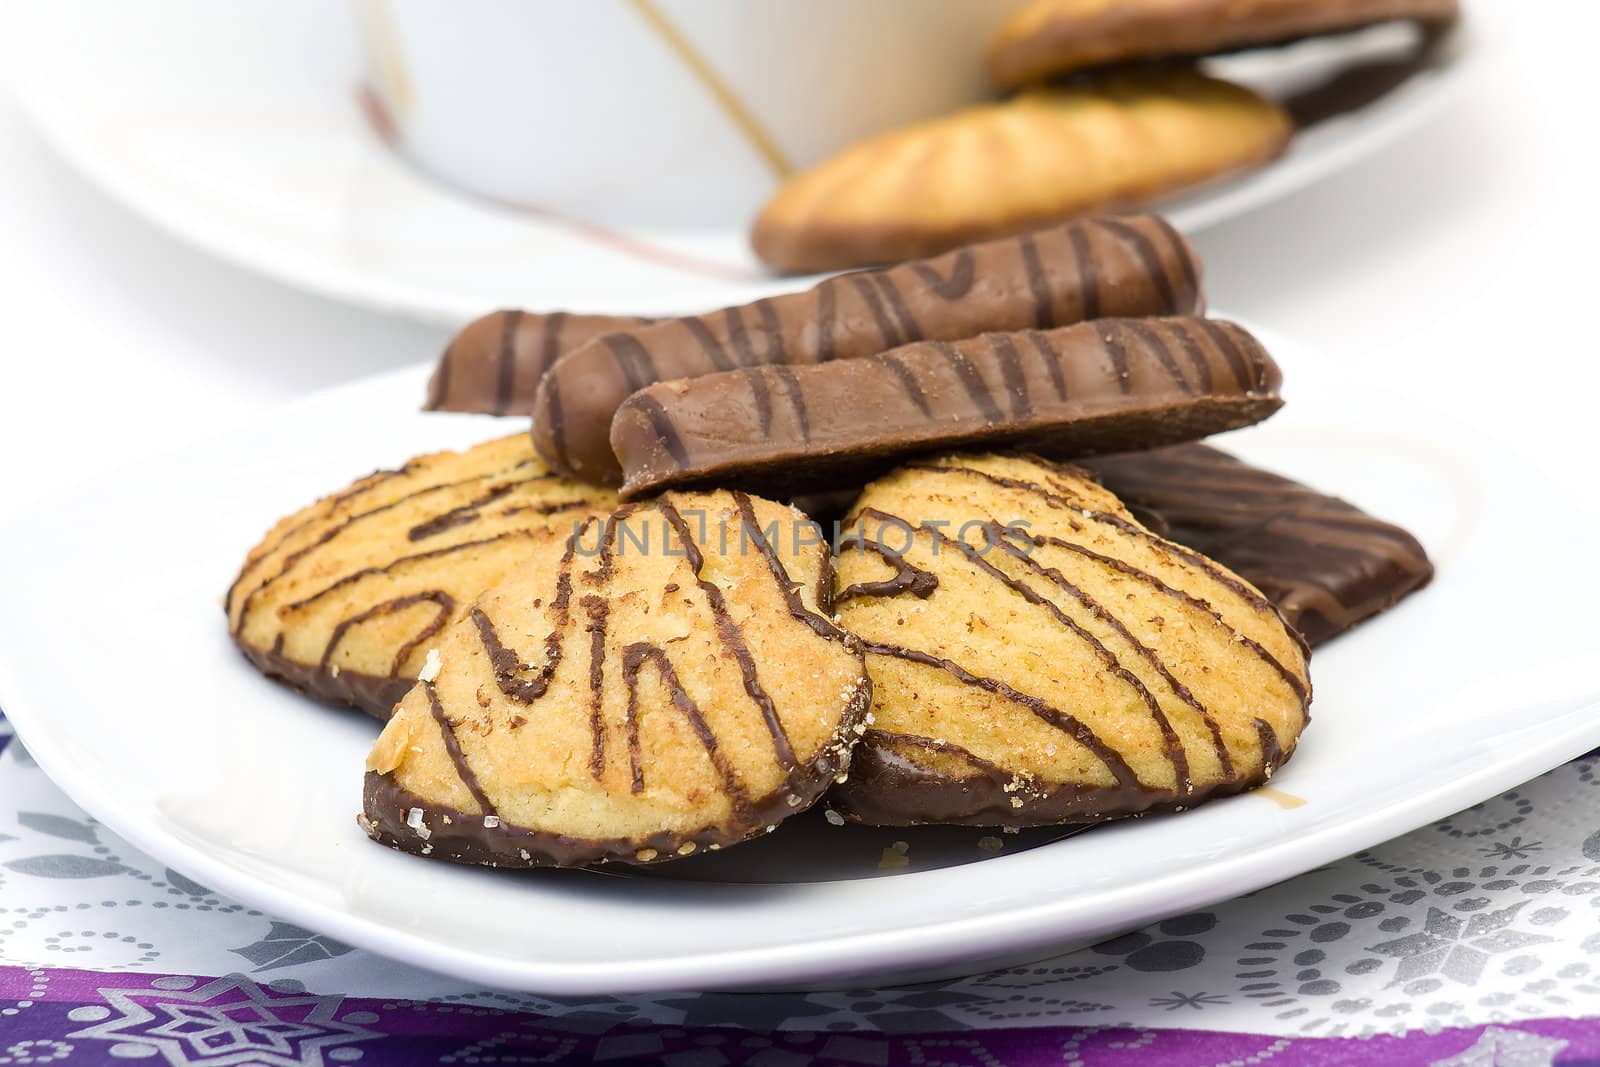 Chocolate cookie closeup  by miradrozdowski